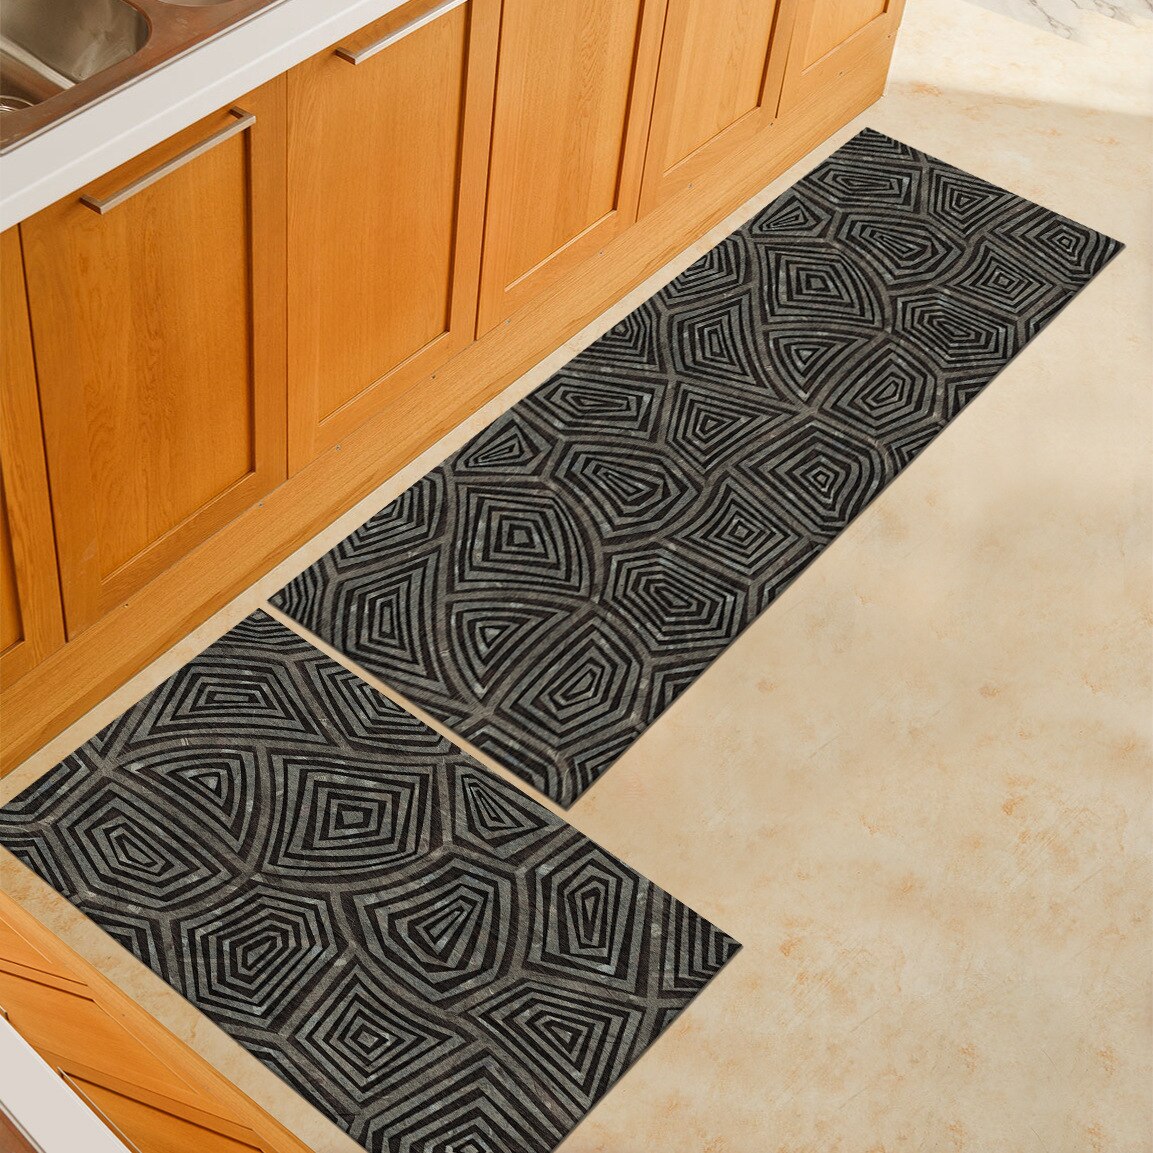 Zeegle Doormats Outdoor Home Living Room Area Rug Bedroom Carpets Bedside Mats Anti-slip Office Chair Floor Mats Kitchen Rugs